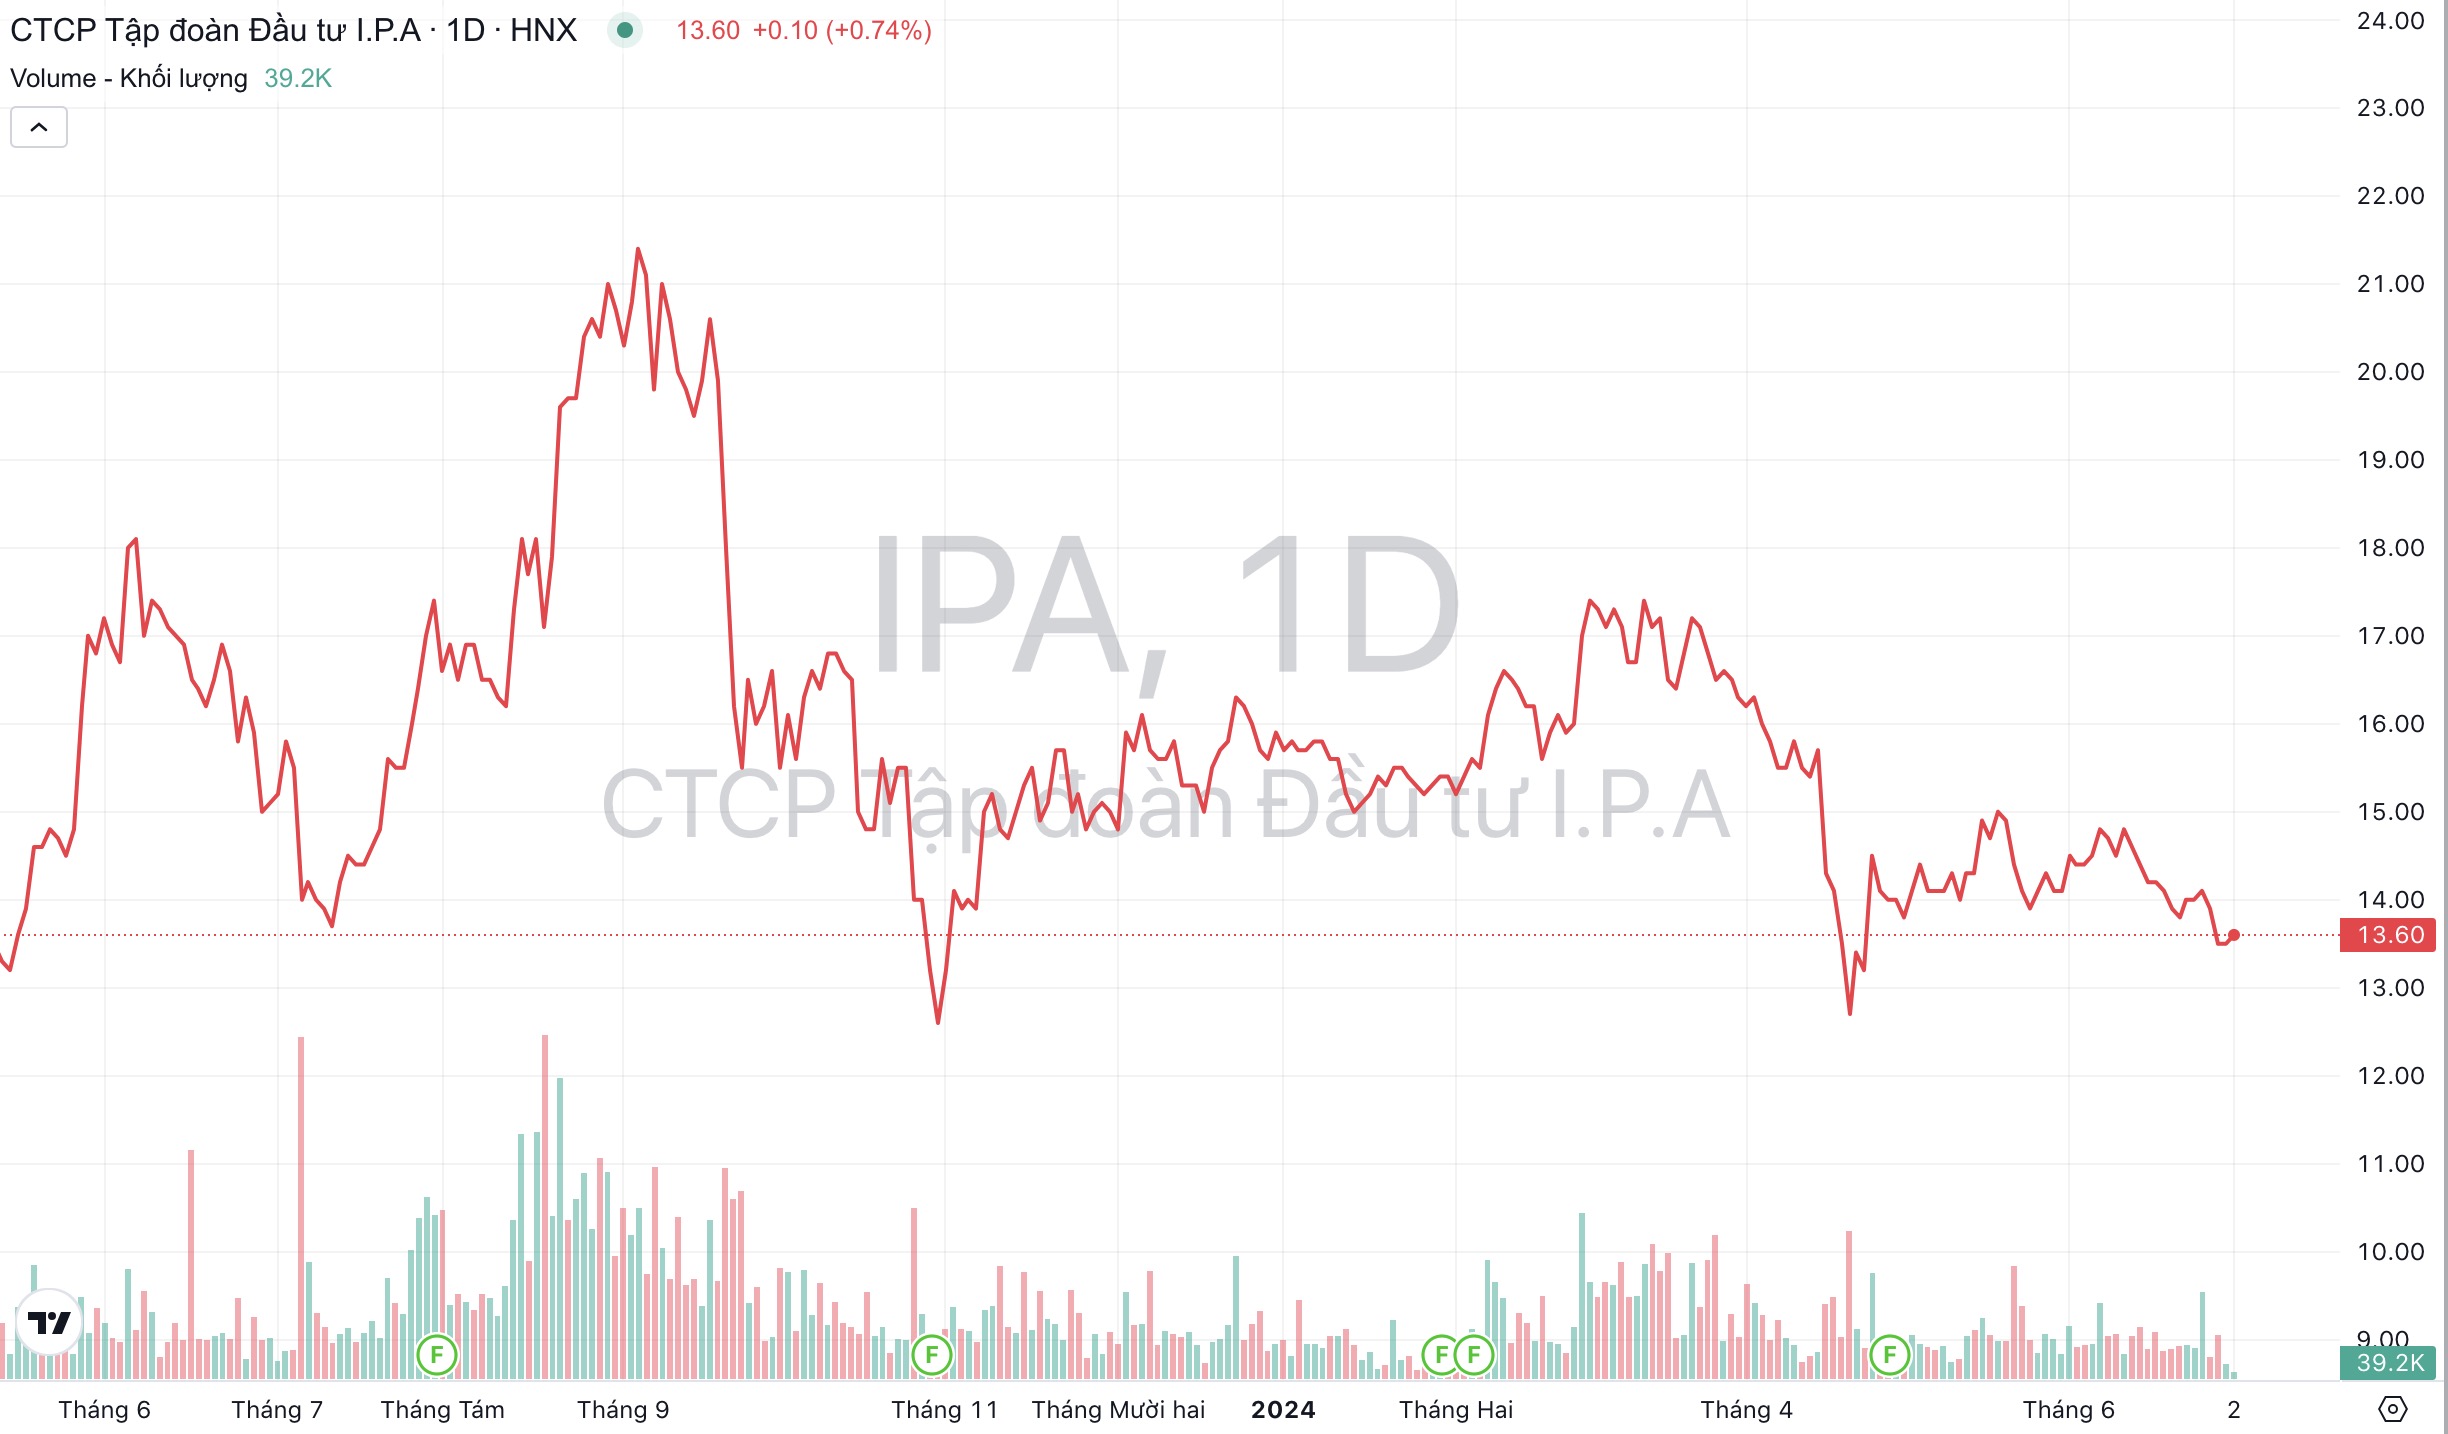 Giá cổ phiếu IPA Đầu tư I.P.A